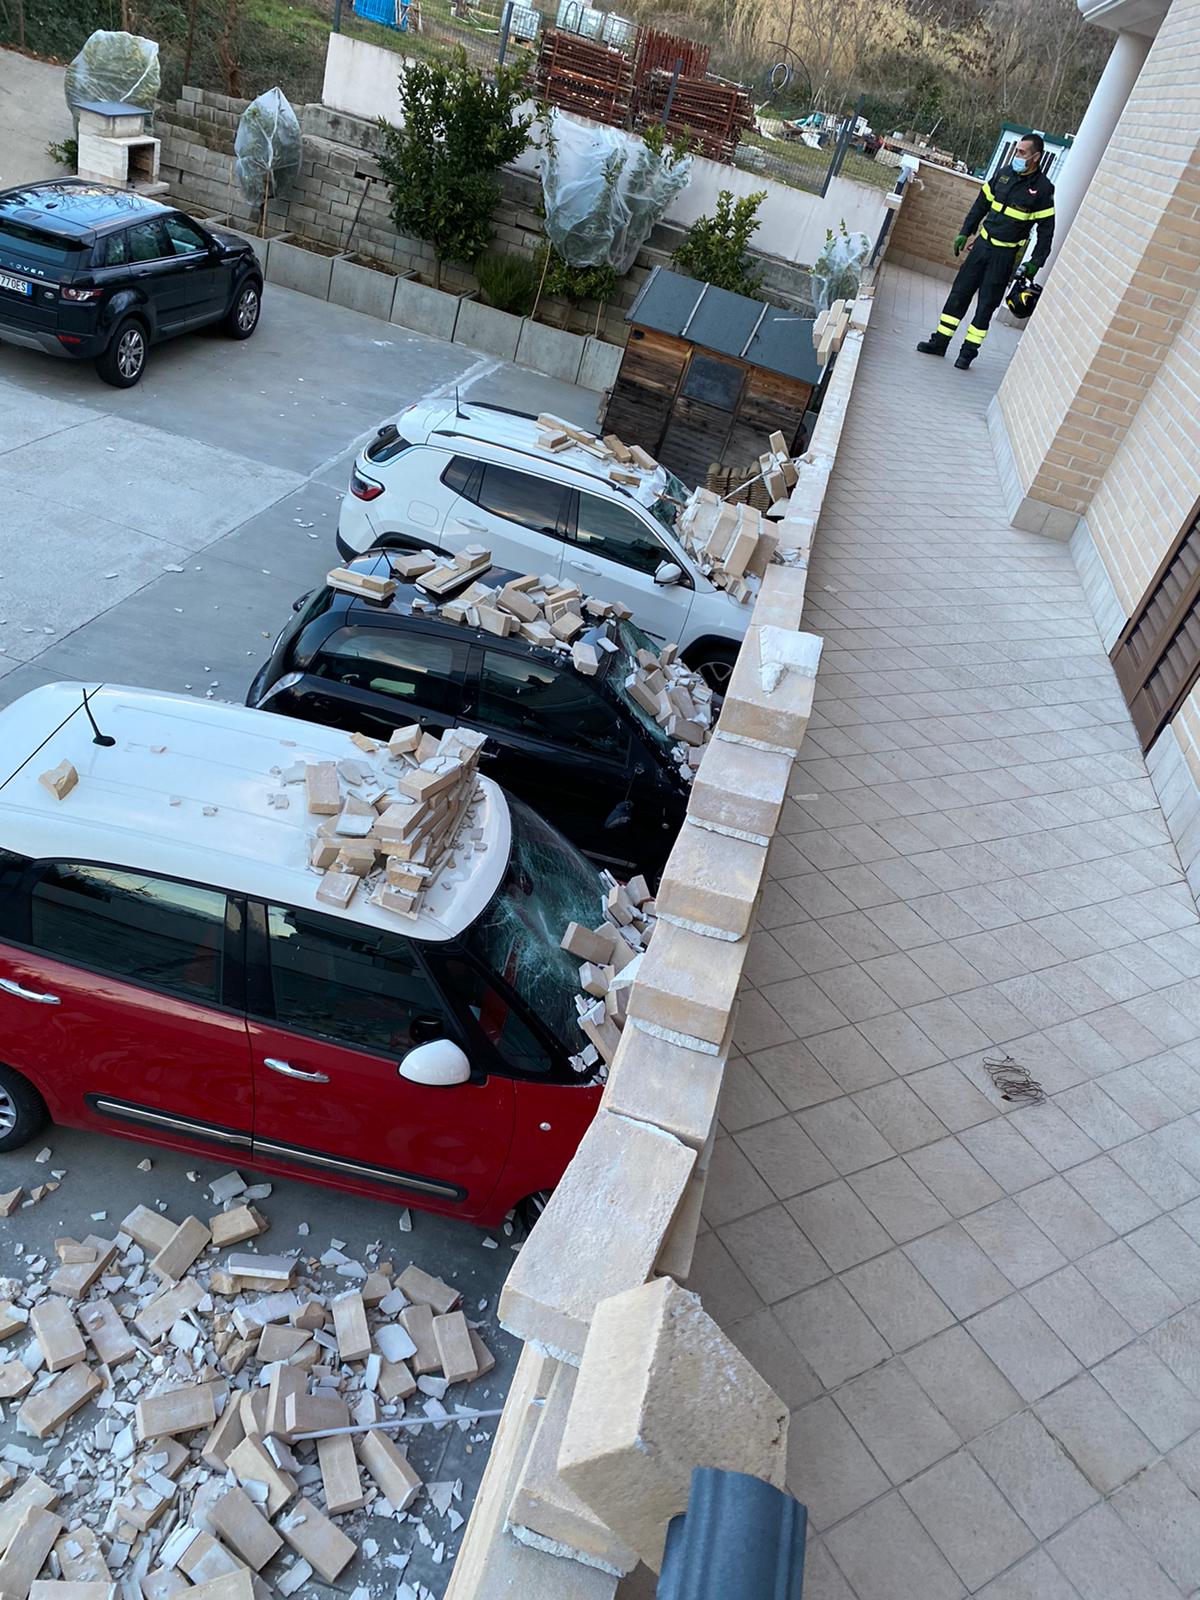 Teramo – Vento forte: crolla balcone, mattoni sulle auto